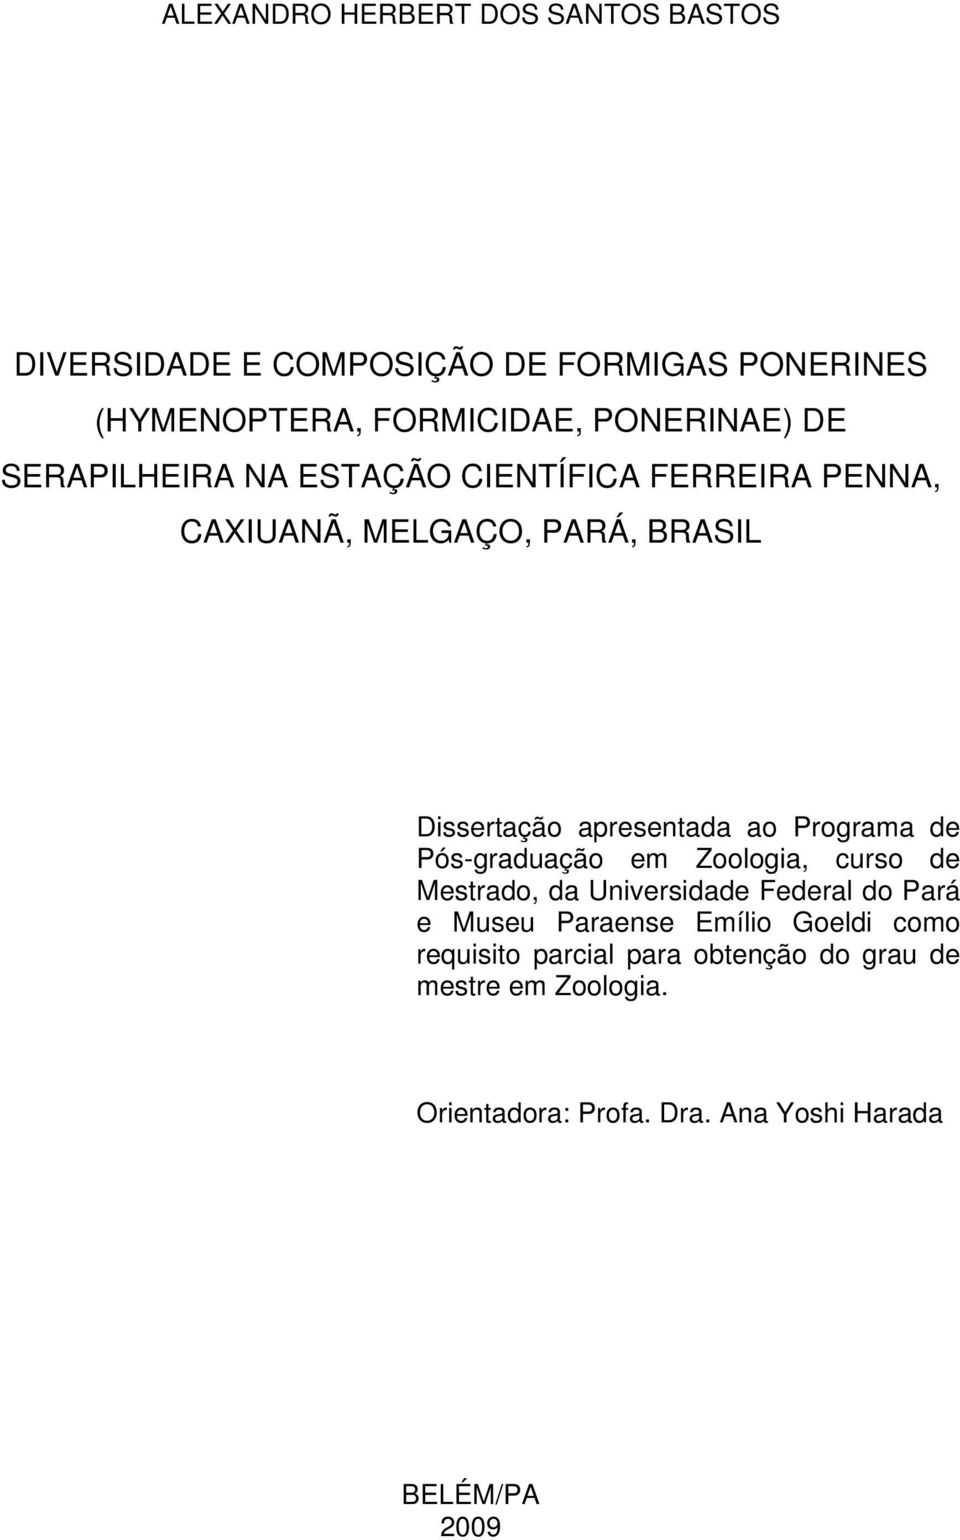 Programa de Pós-graduação em Zoologia, curso de Mestrado, da Universidade Federal do Pará e Museu Paraense Emílio